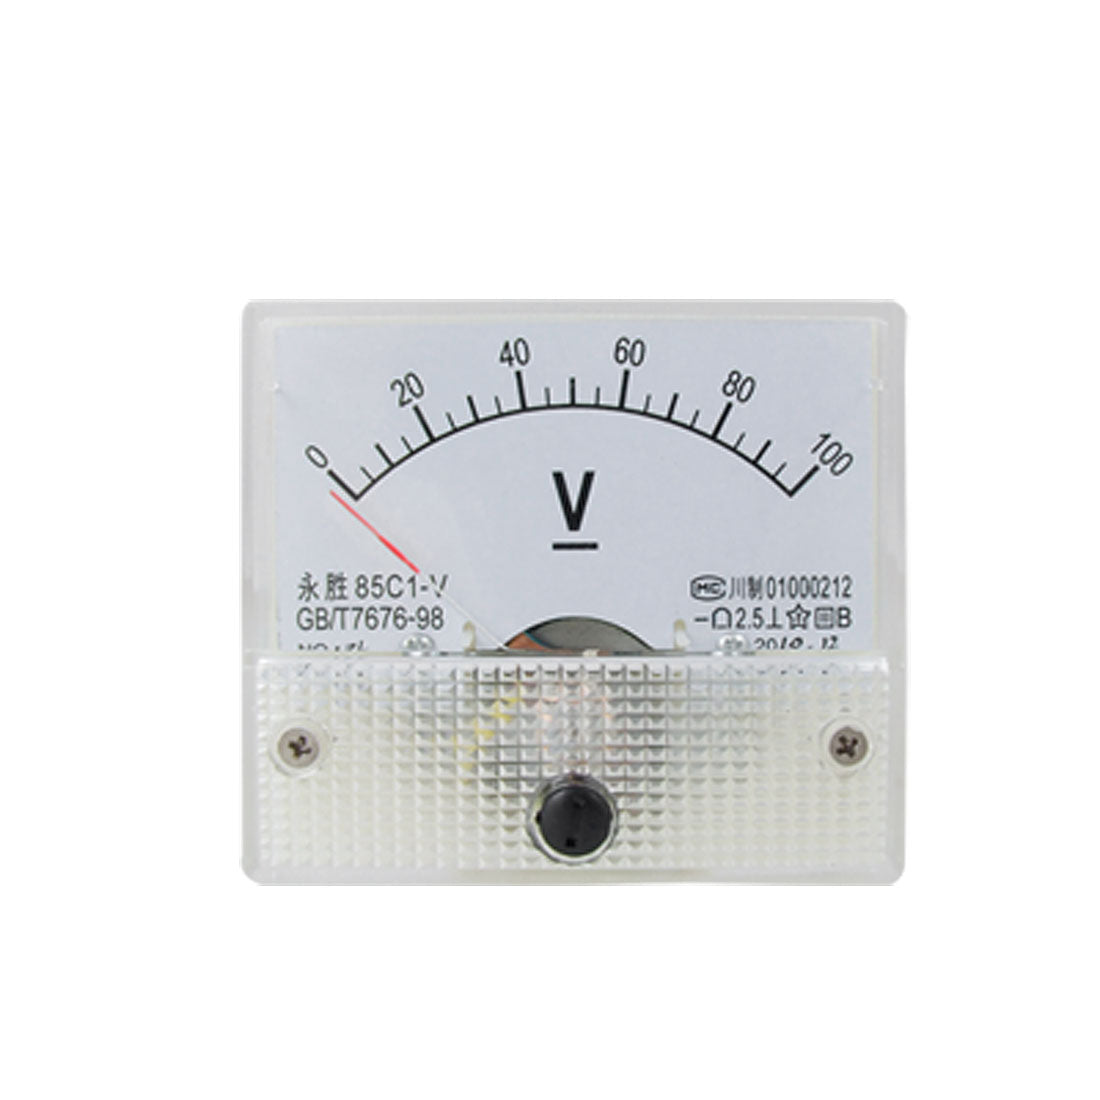 uxcell Uxcell DC 0-100V Analog Volt Voltage Voltmeter Meter Panel 85C1-V